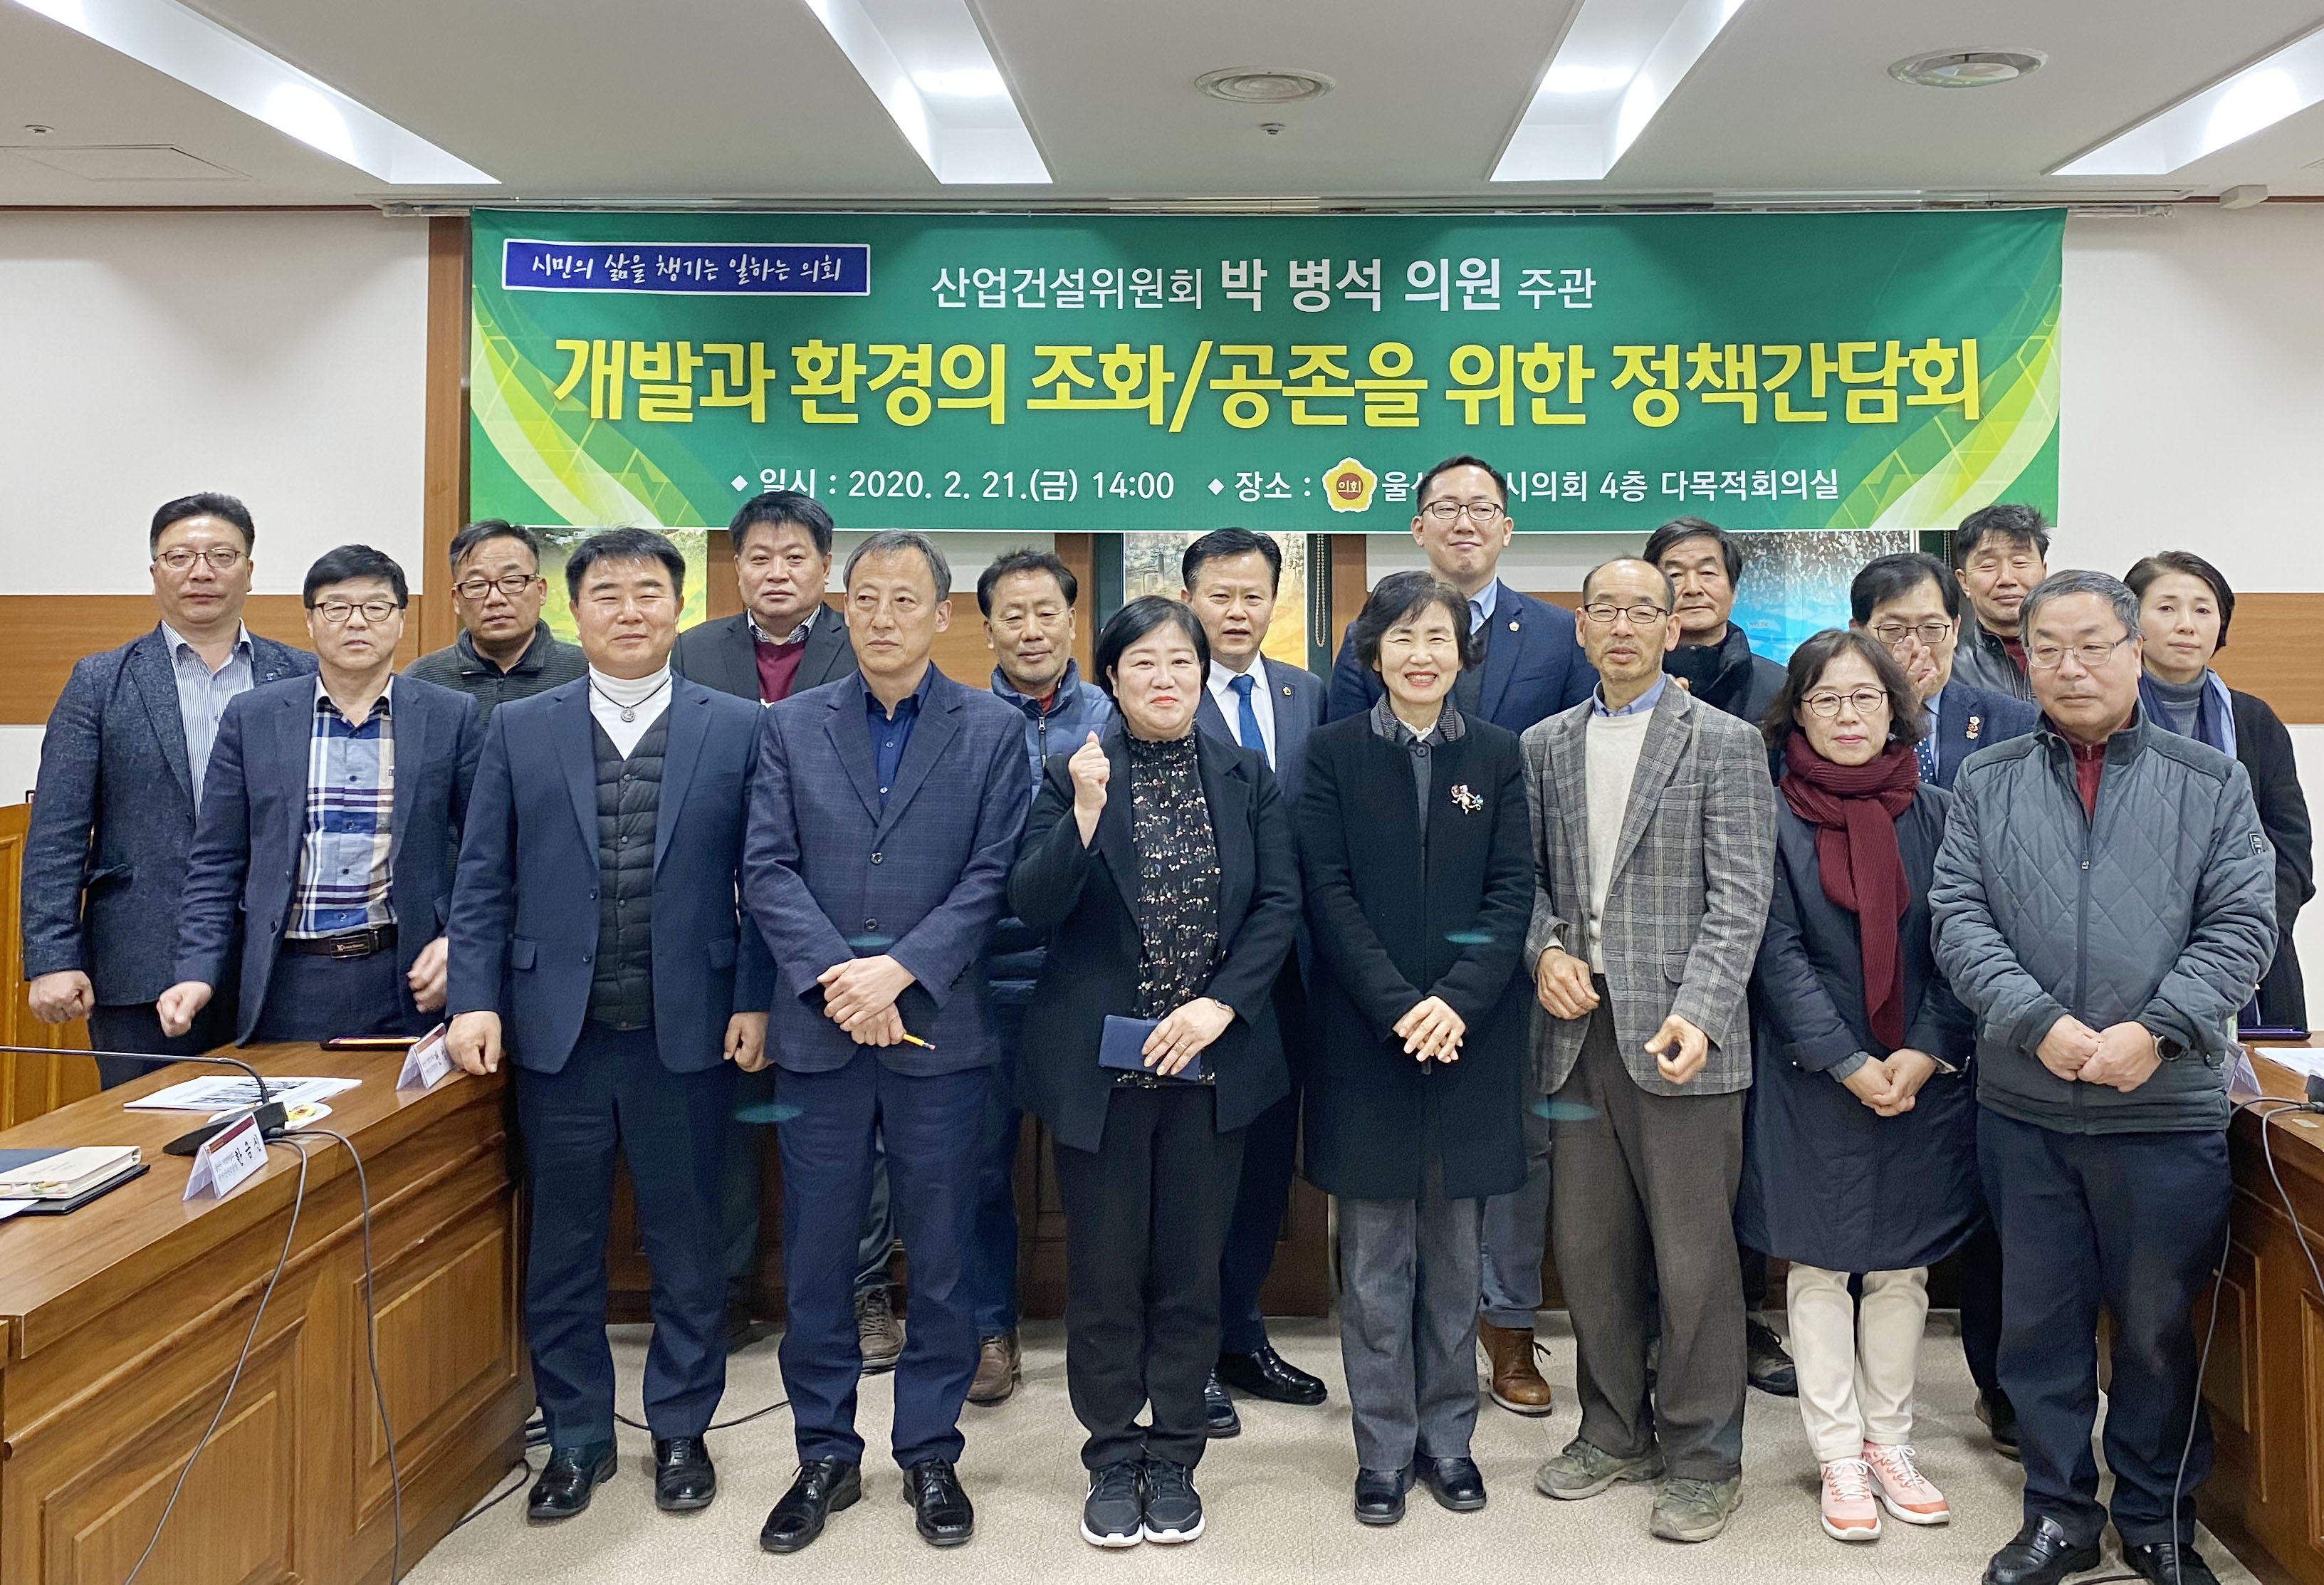 박병석 의원 개발과 환경의 조화/공존을 위한 정책간담회 개최7